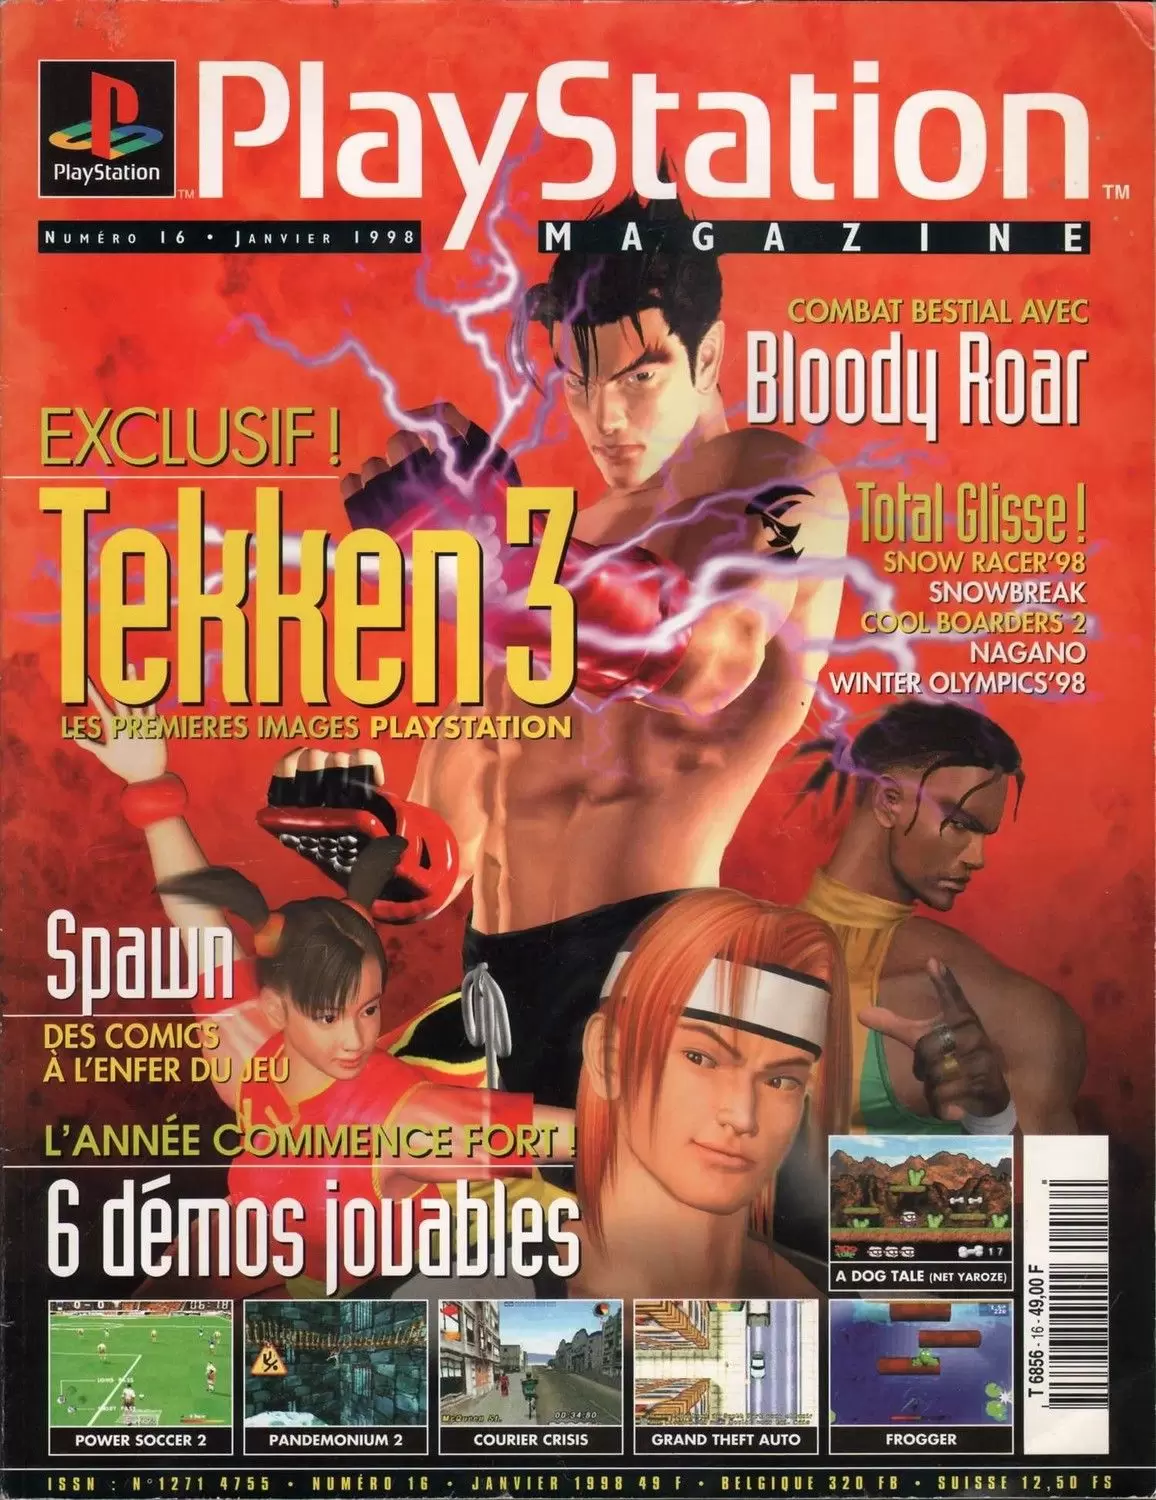 Playstation Magazine - Playstation Magazine #16